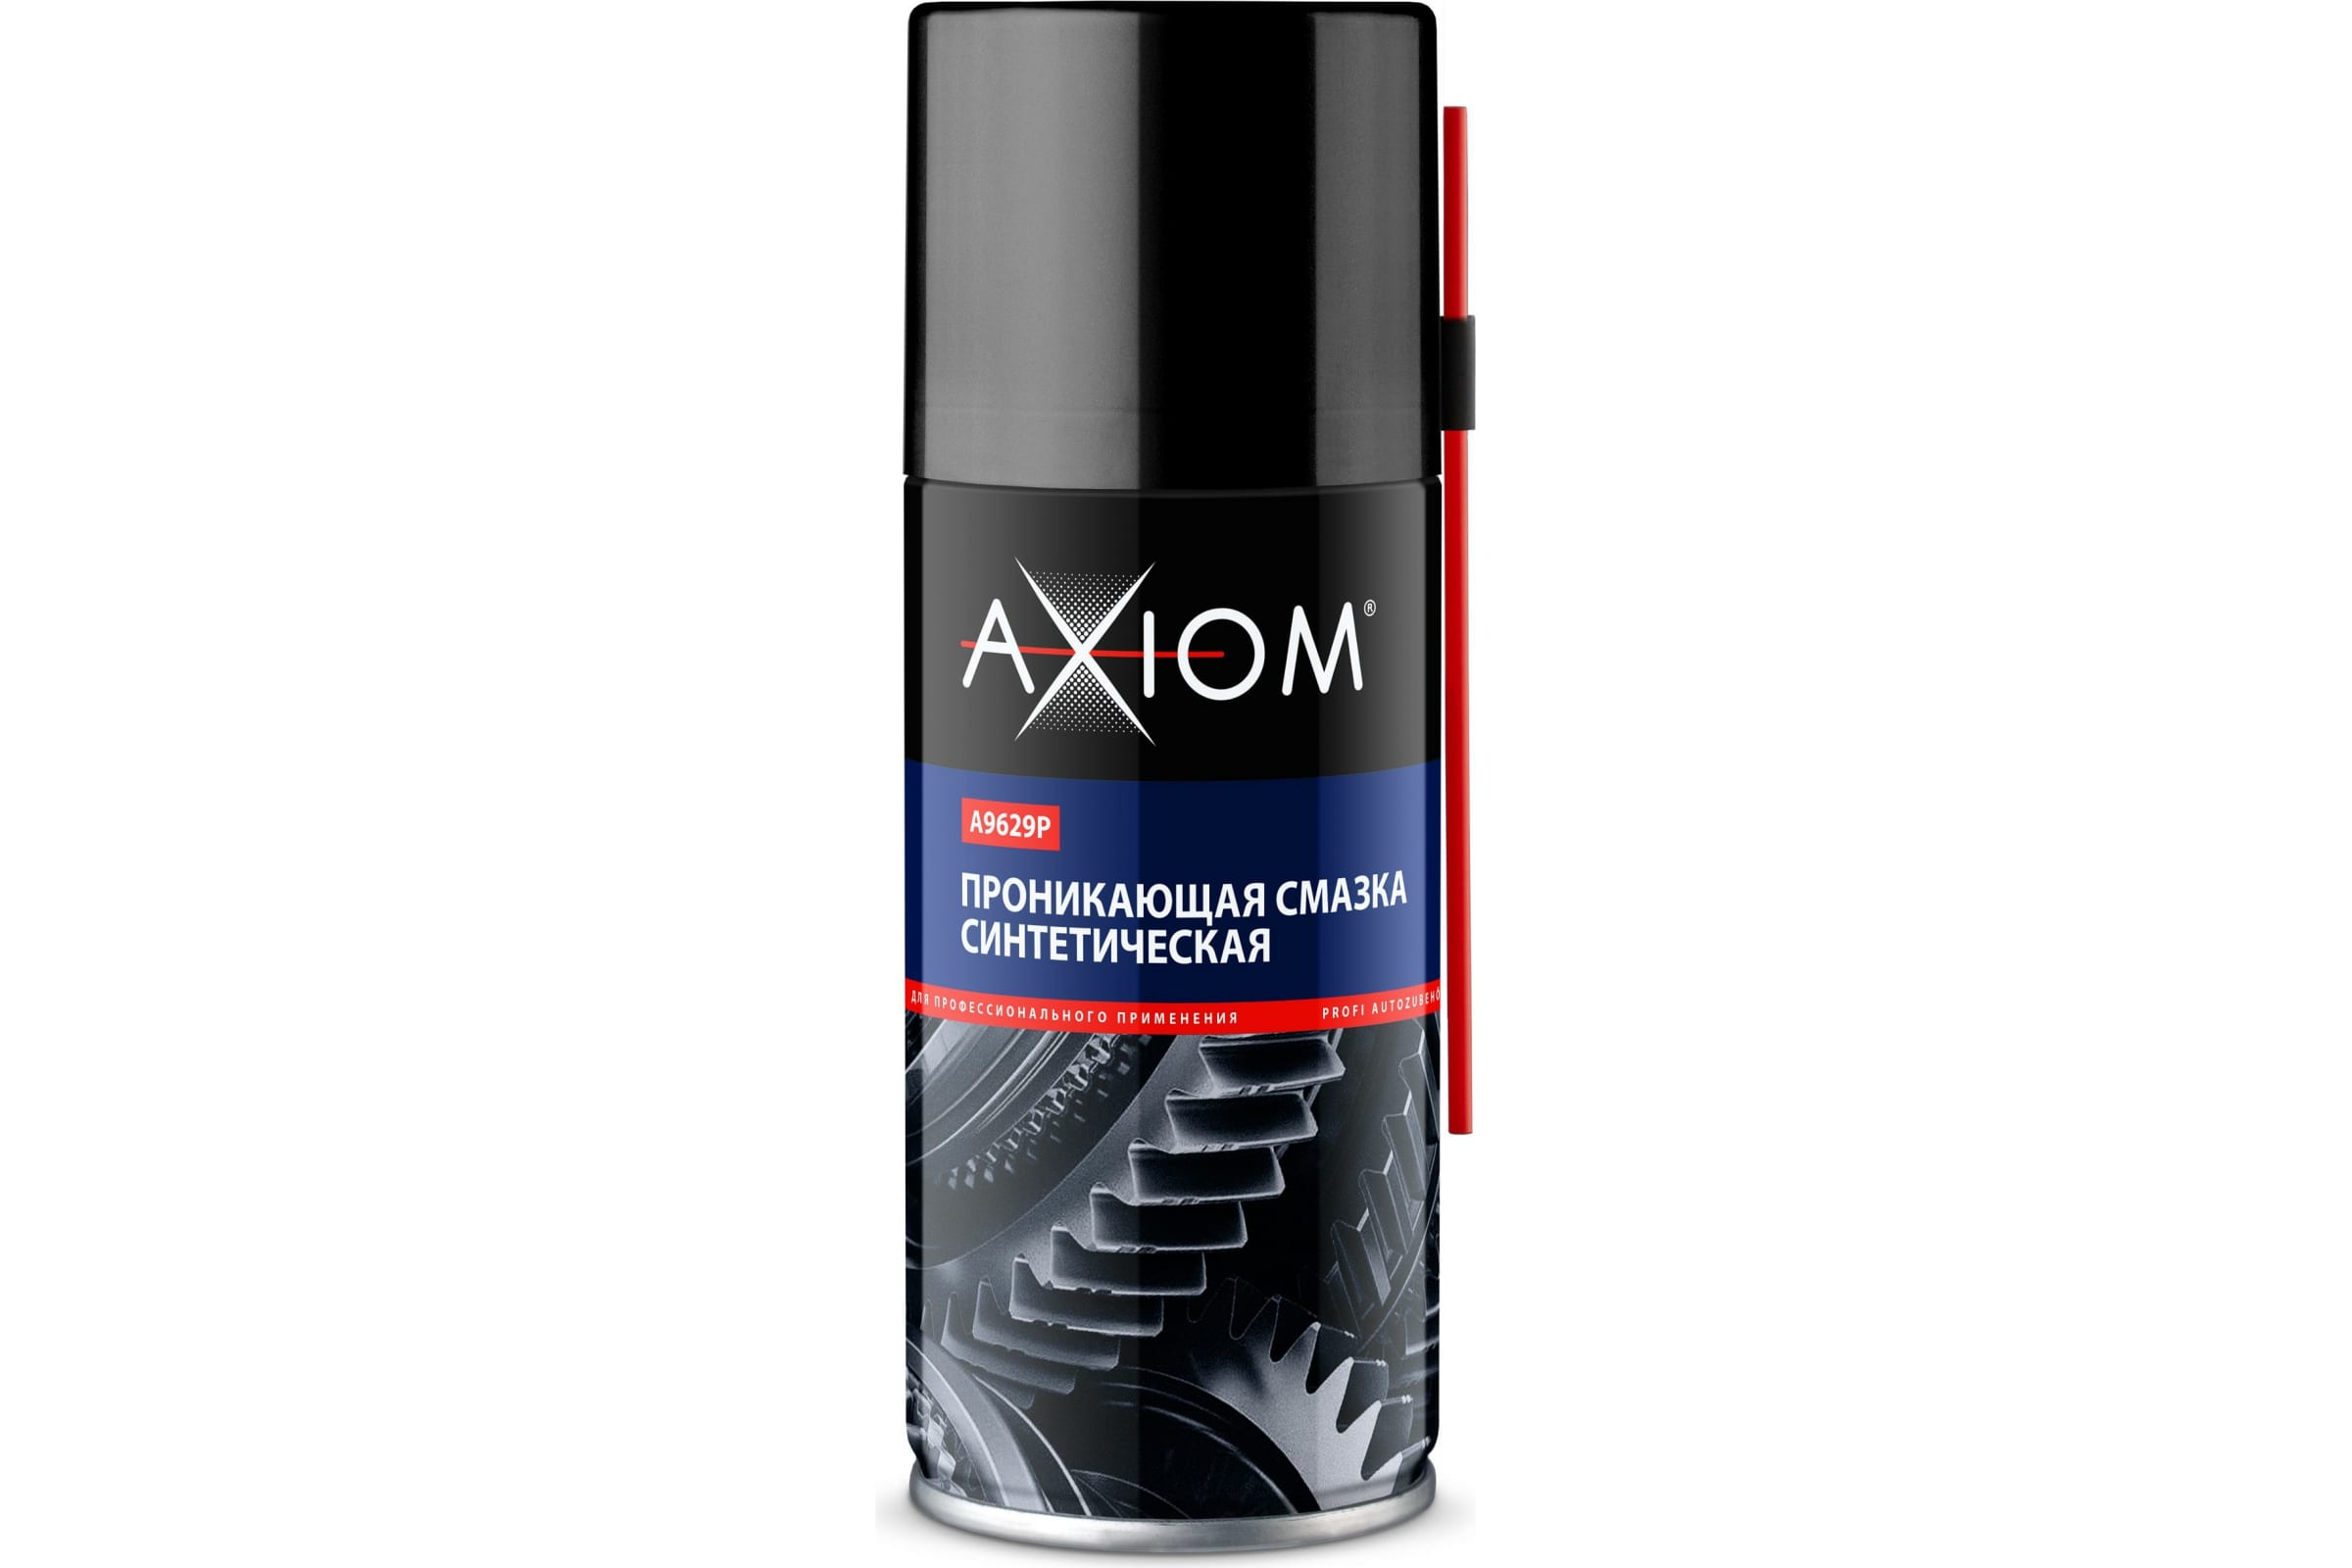 AXIOM Синтетическая проникающая смазка 210 мл. a9629p